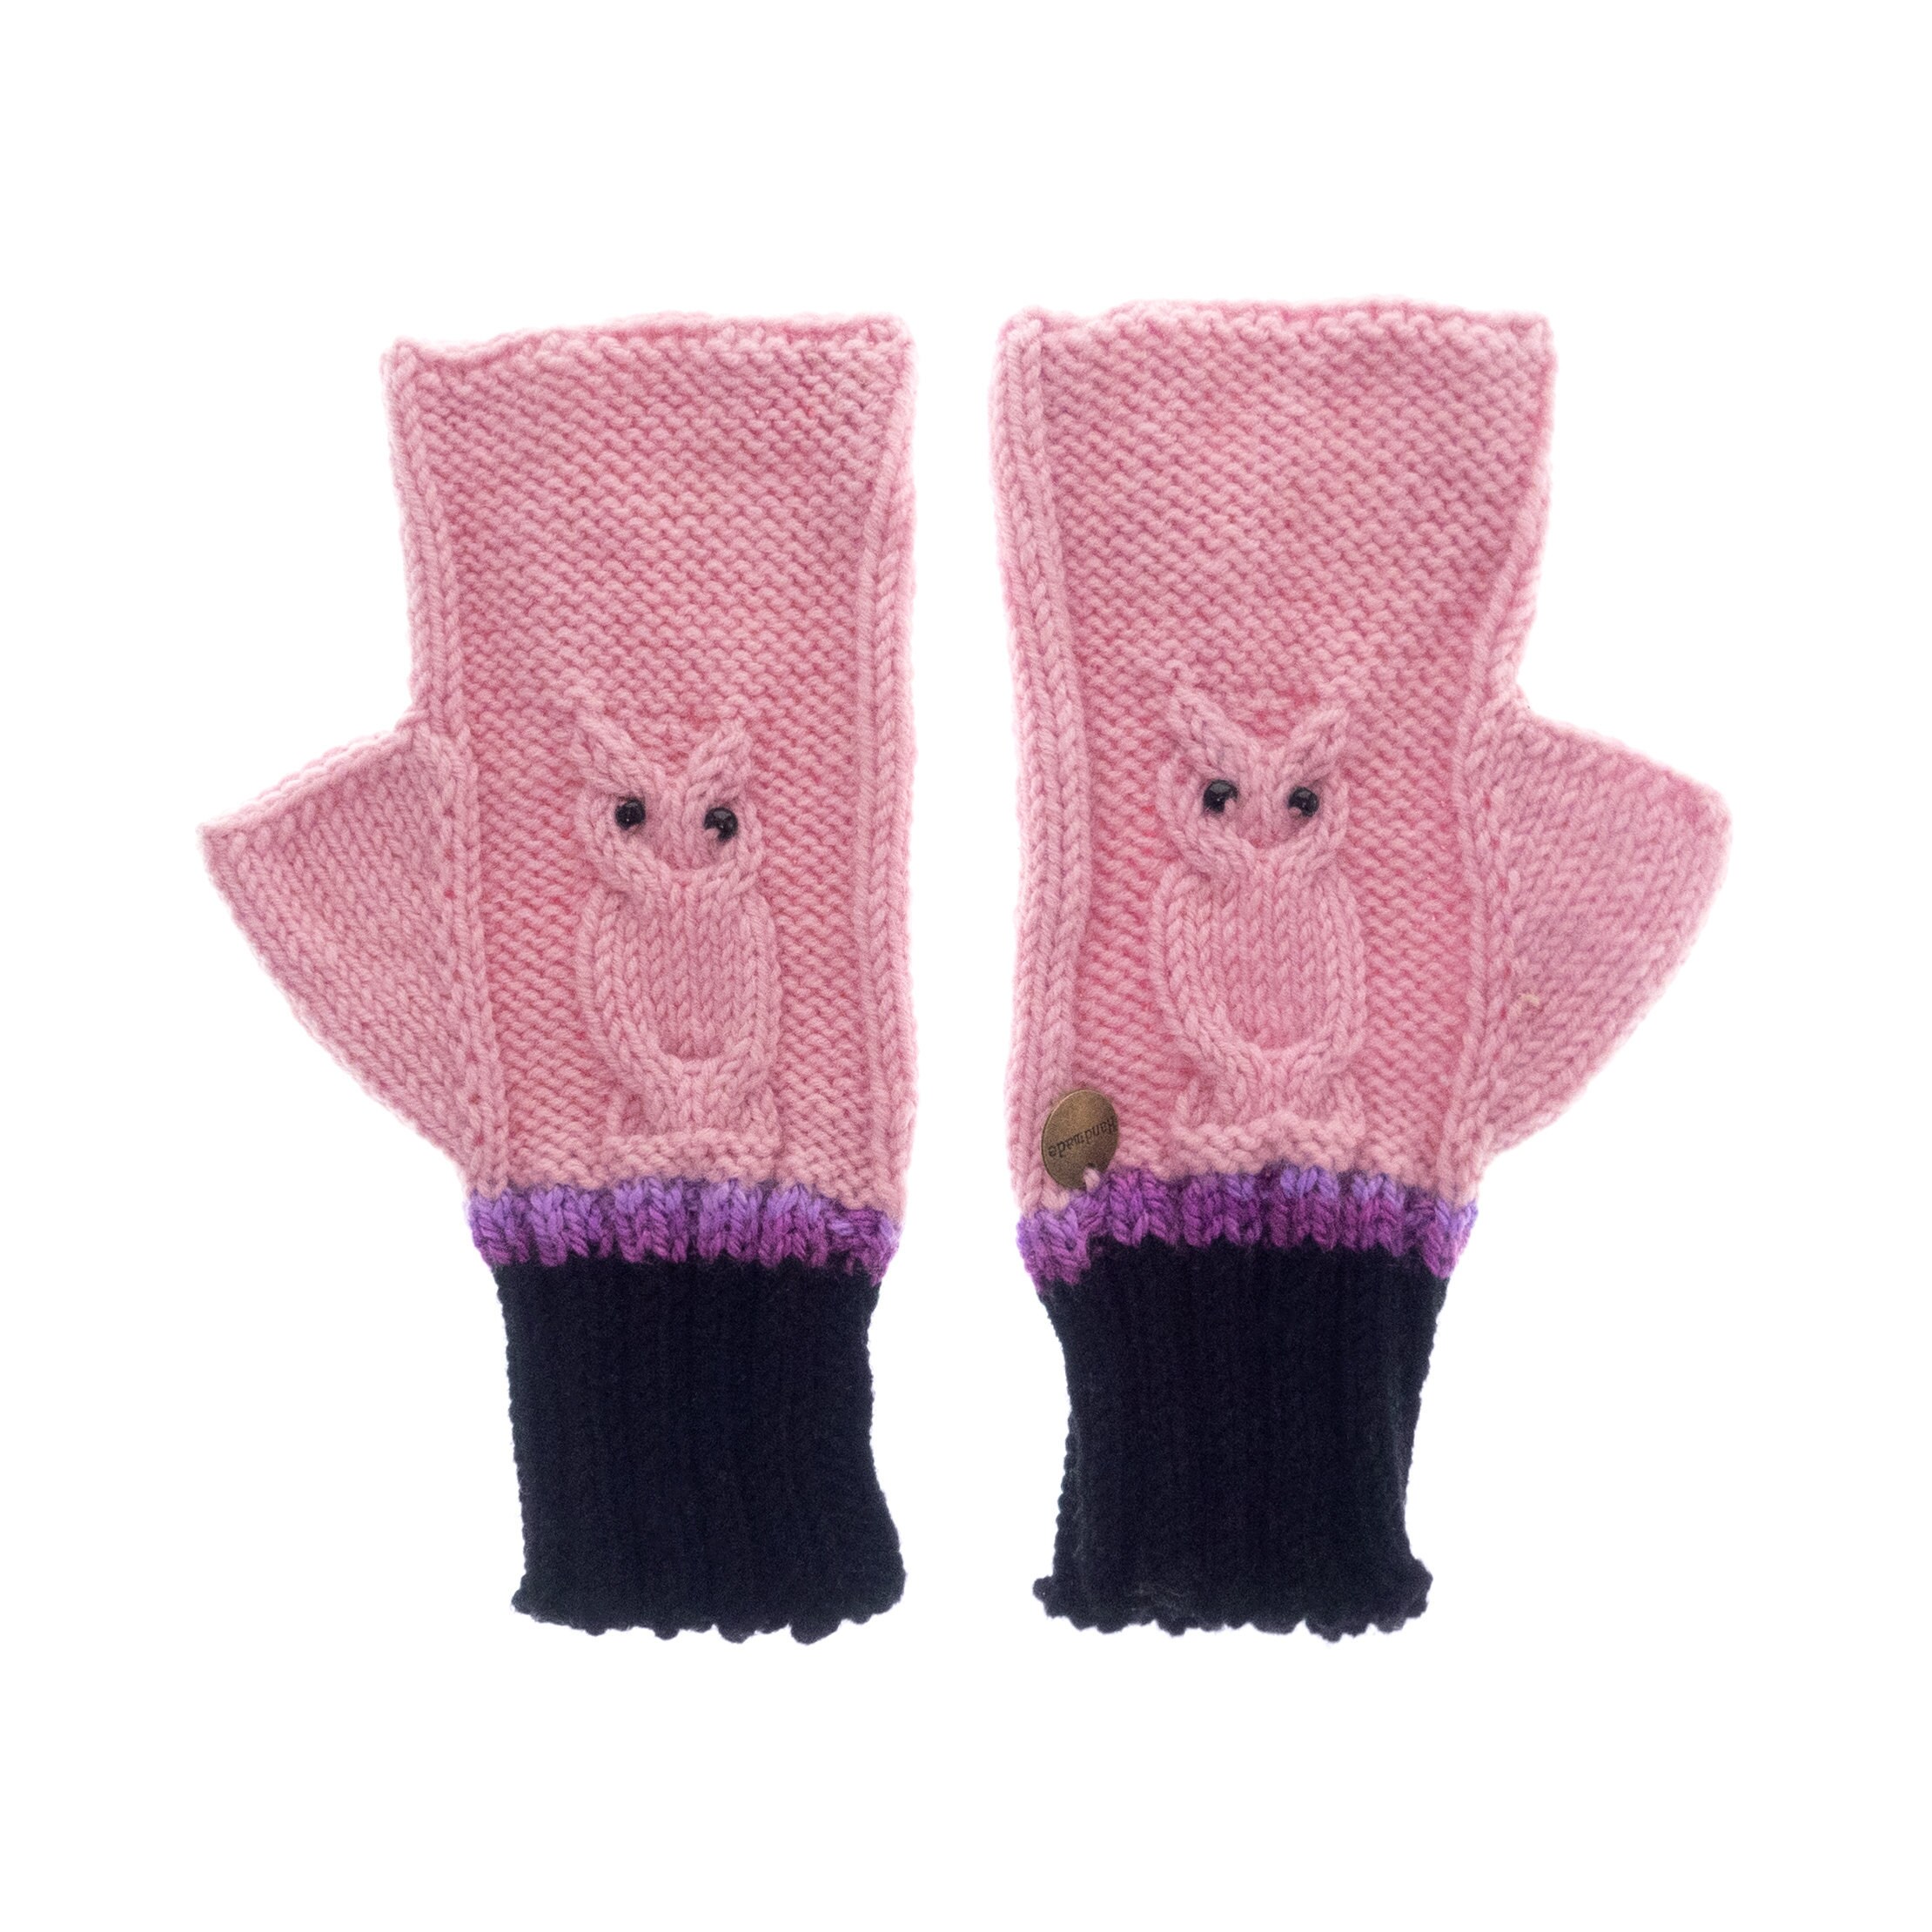 Crochet Mittens Fingerless Gloves Pink Owls